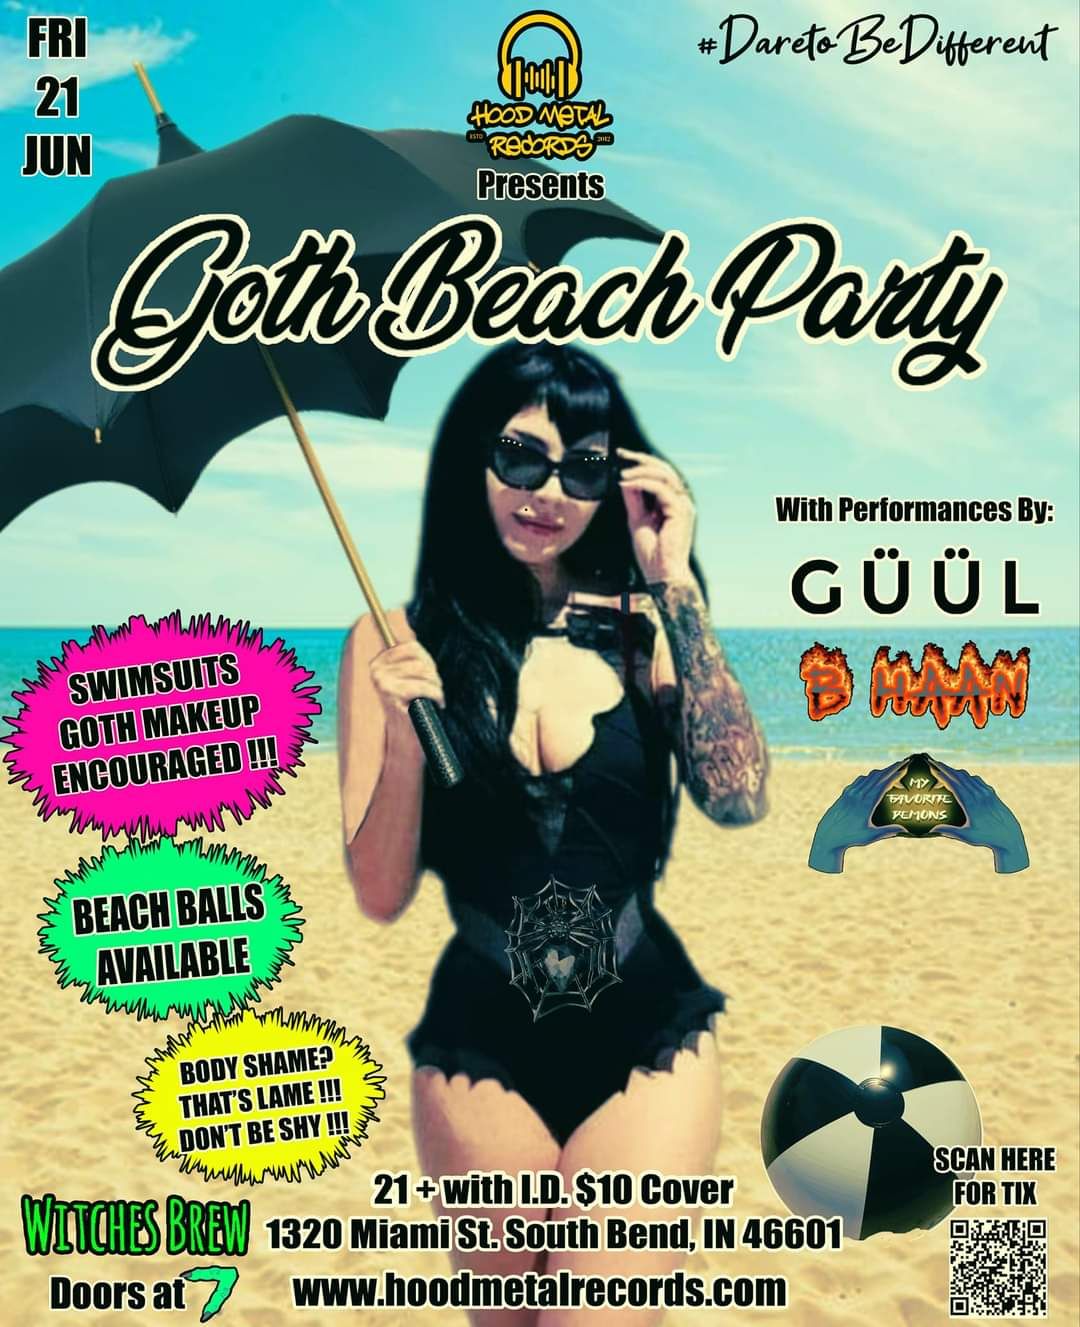 Goth Beach Party